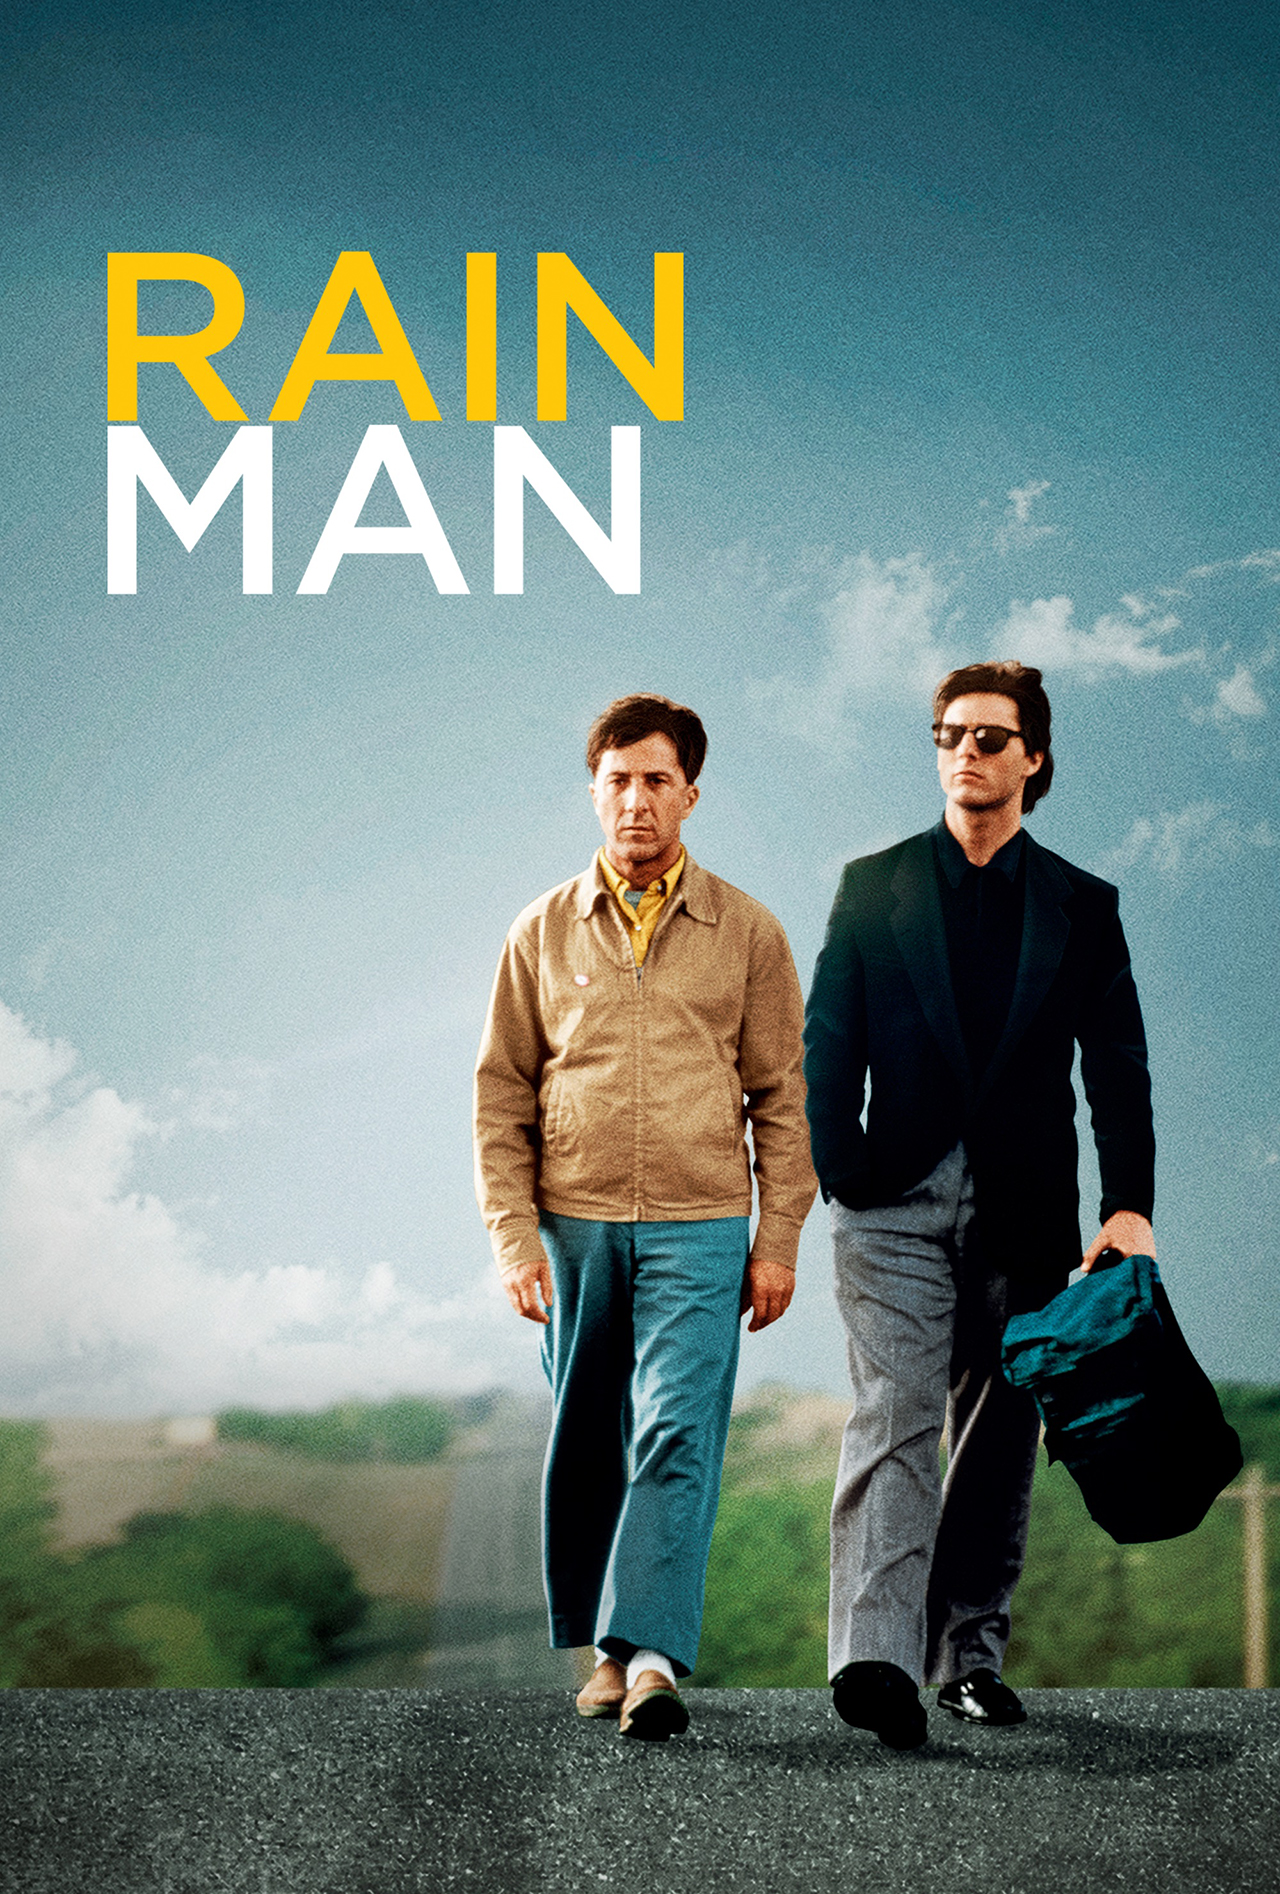 Человек дождя. Человек дождя 1988. Человек дождя фильм 1988. Человек дождя фильм 1988 Постер. Человек дождя (1988, Барри Левинсон).